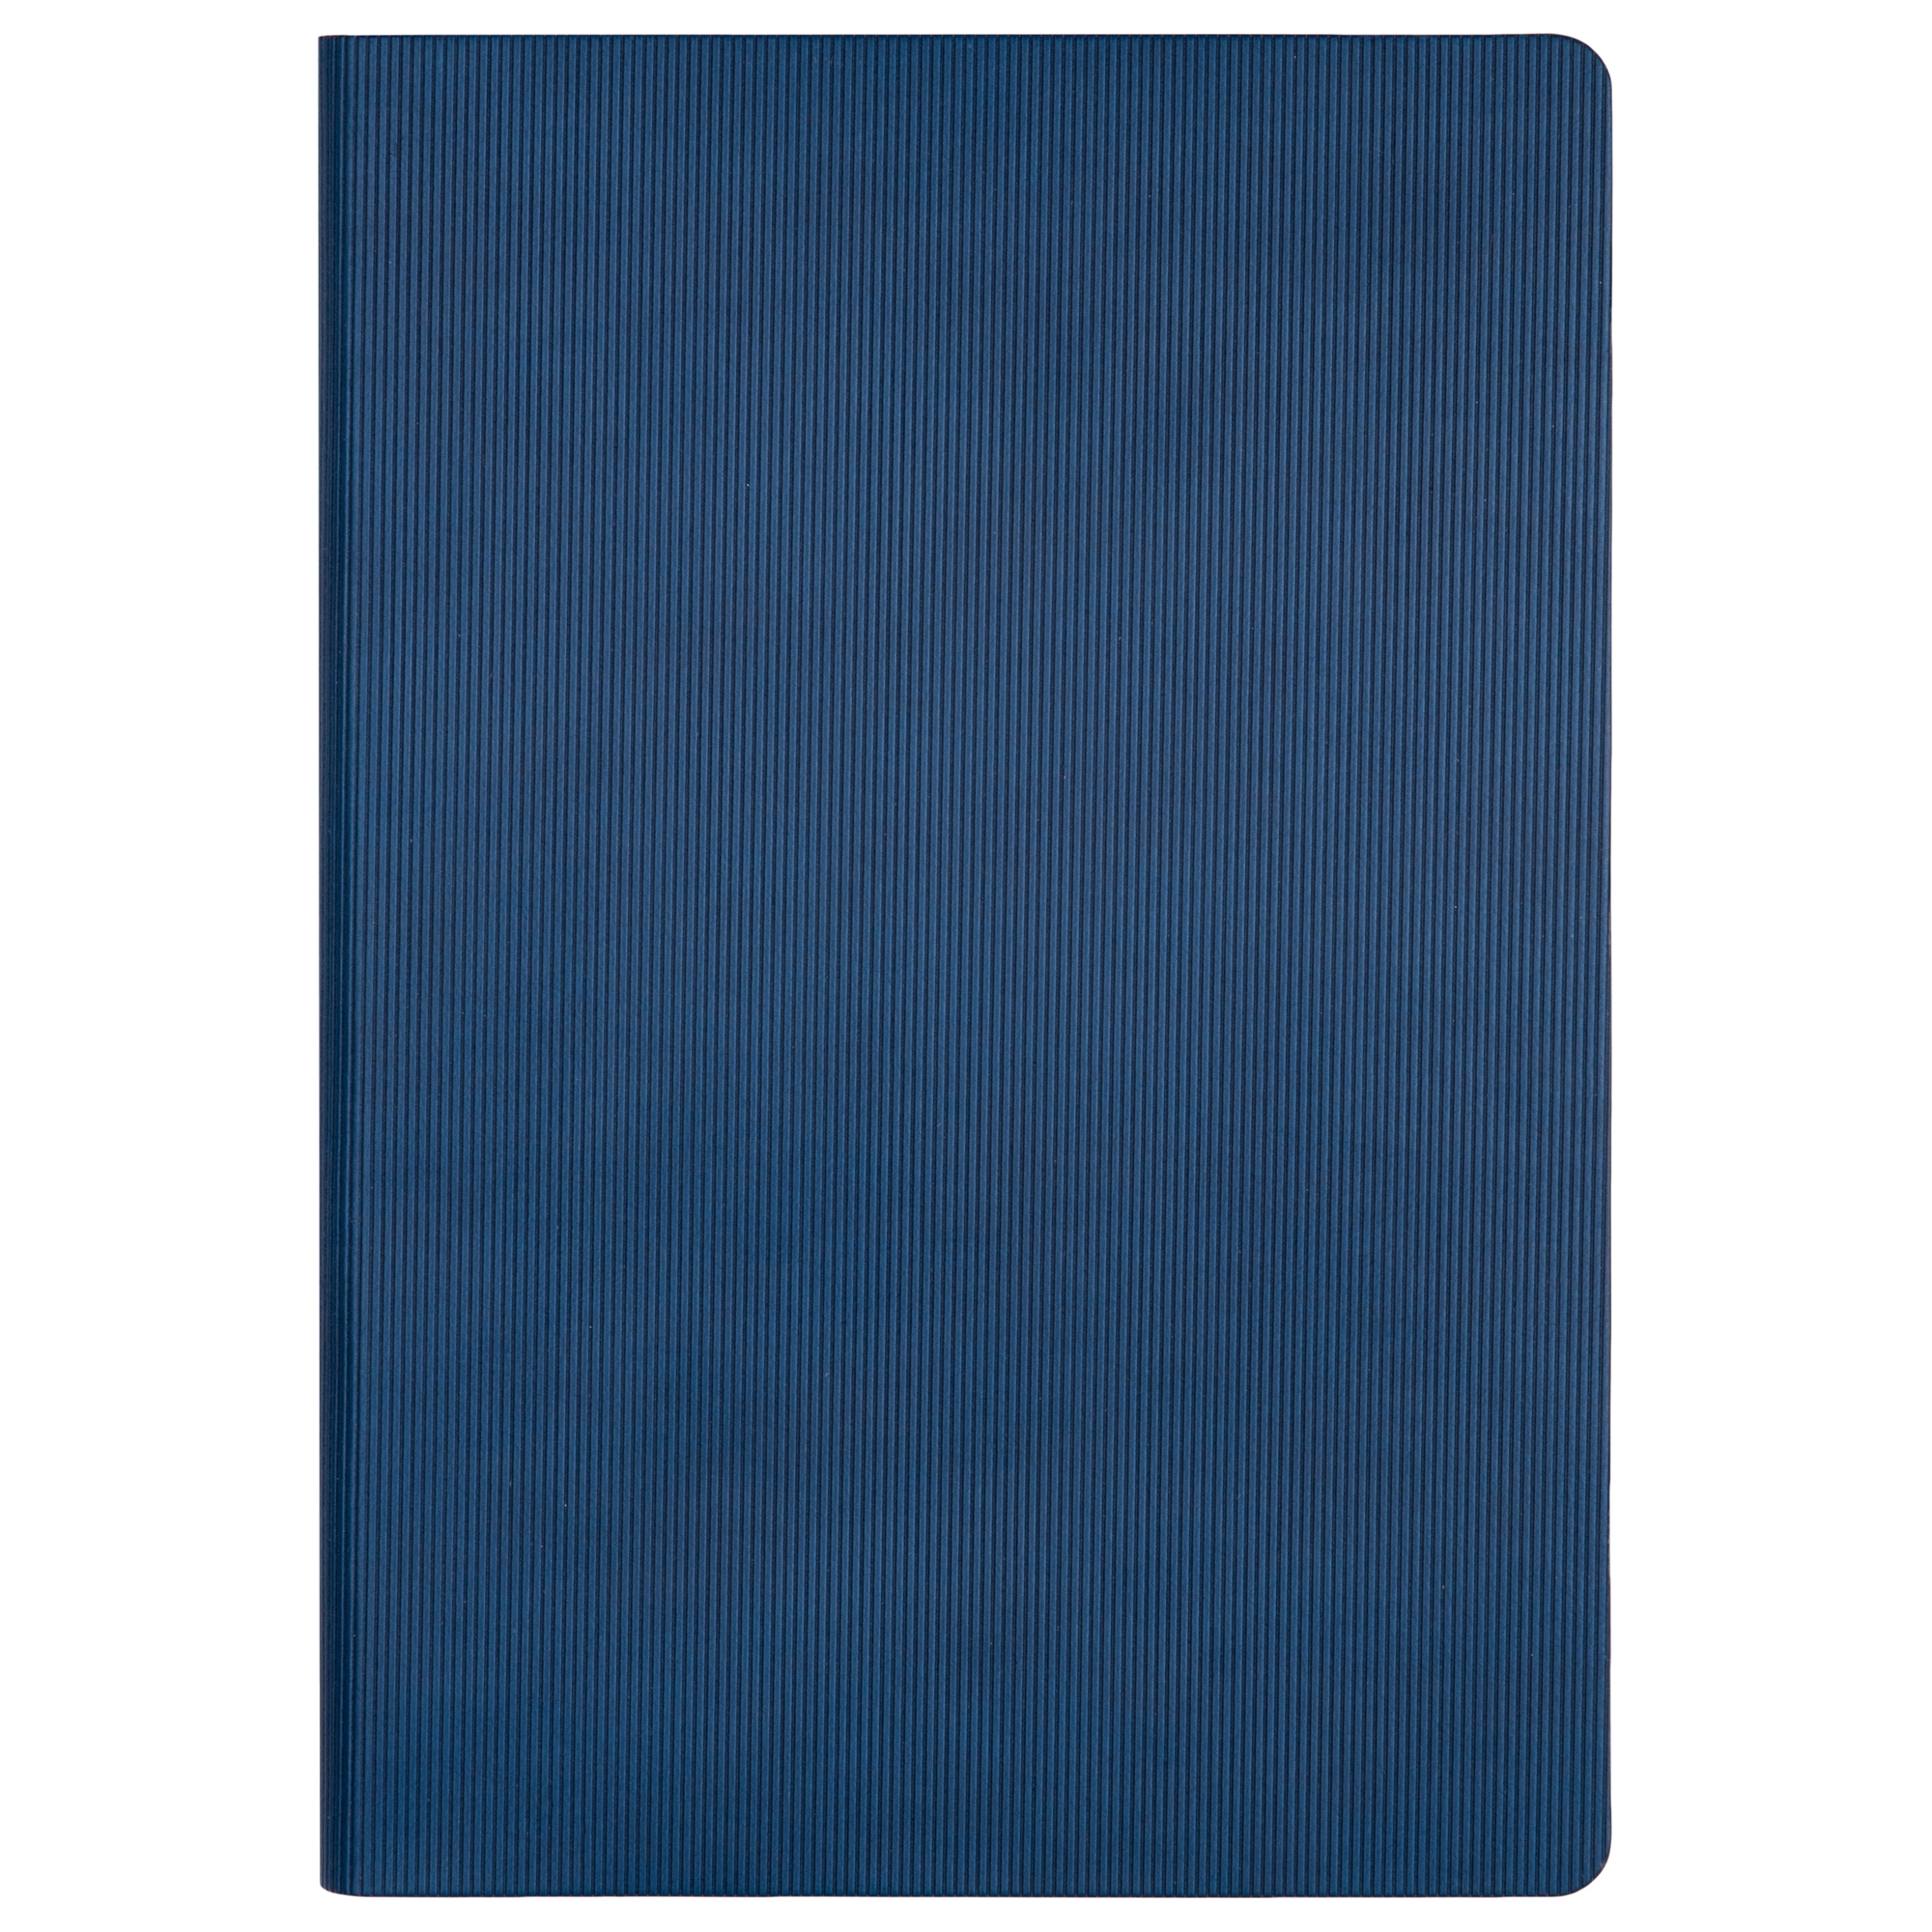 Ежедневник Portobello Trend Rain, недатированный, синий (без упаковки и стикера), синий